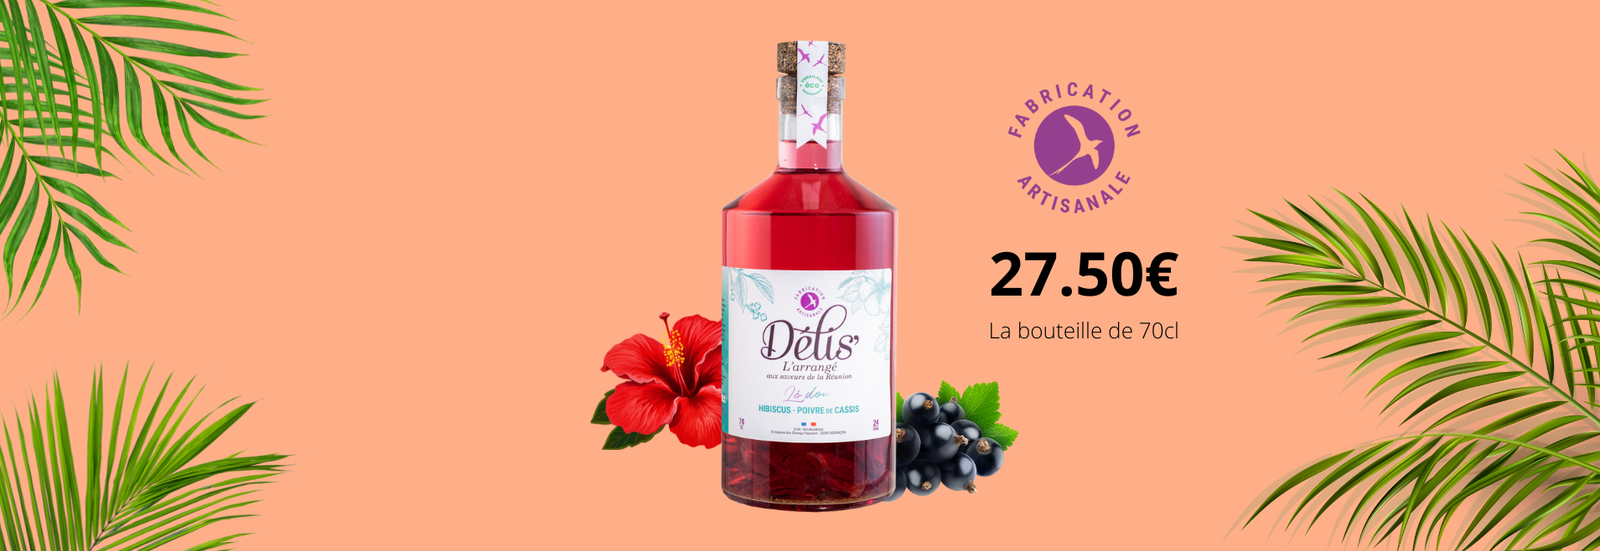 Délis' hibiscus et poivre de cassis de Bourgogne